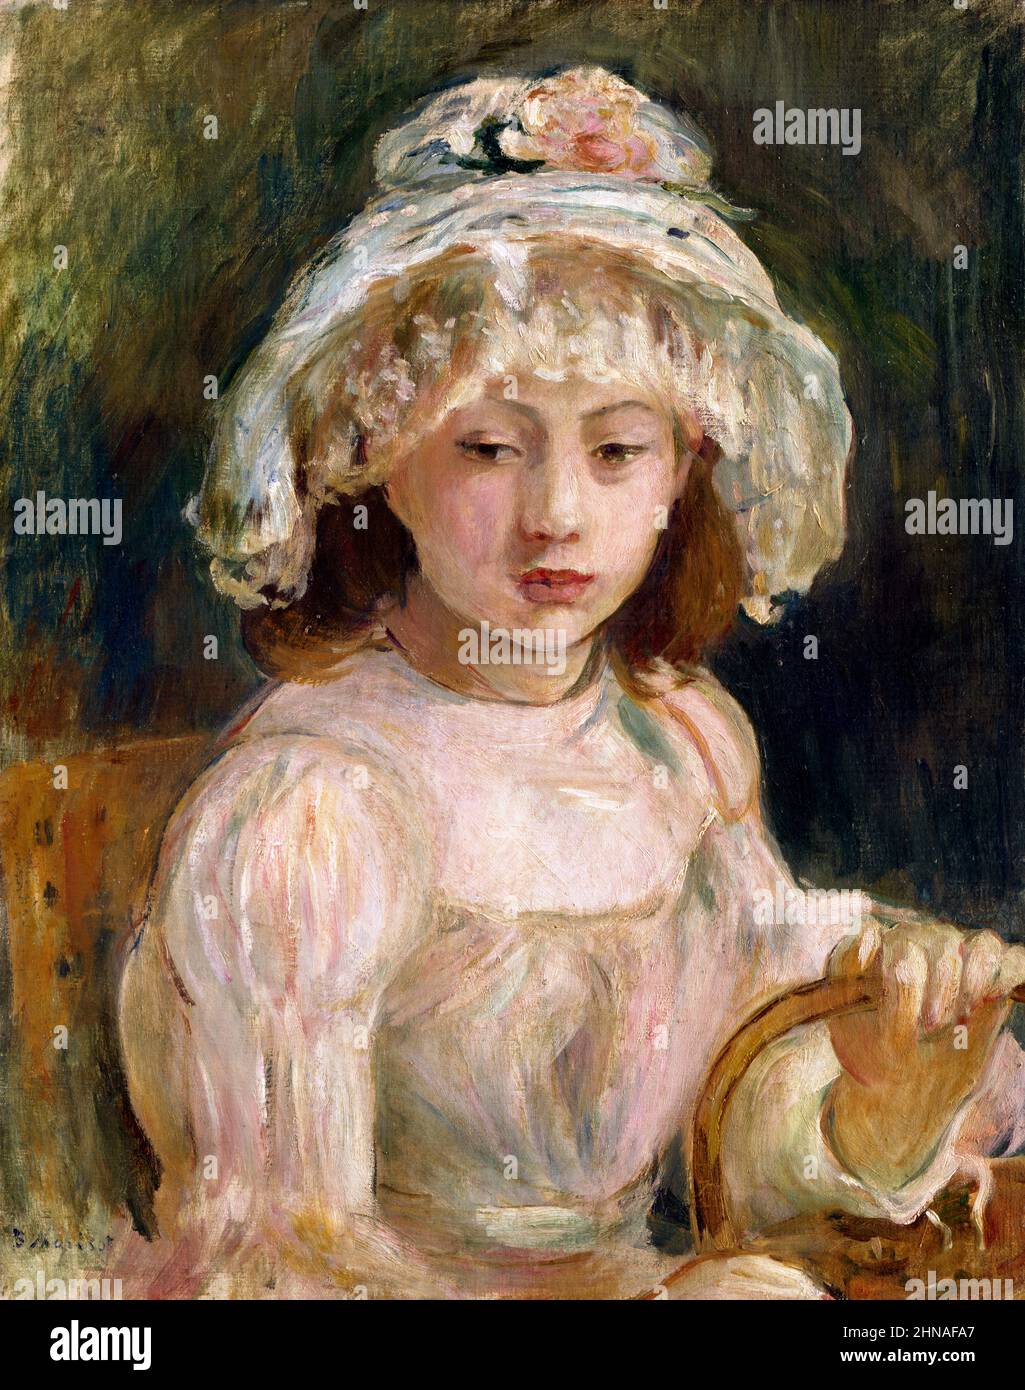 Jeune fille avec un chapeau par Berthe Morisot (1841-1895), huile sur toile, 1892 Banque D'Images